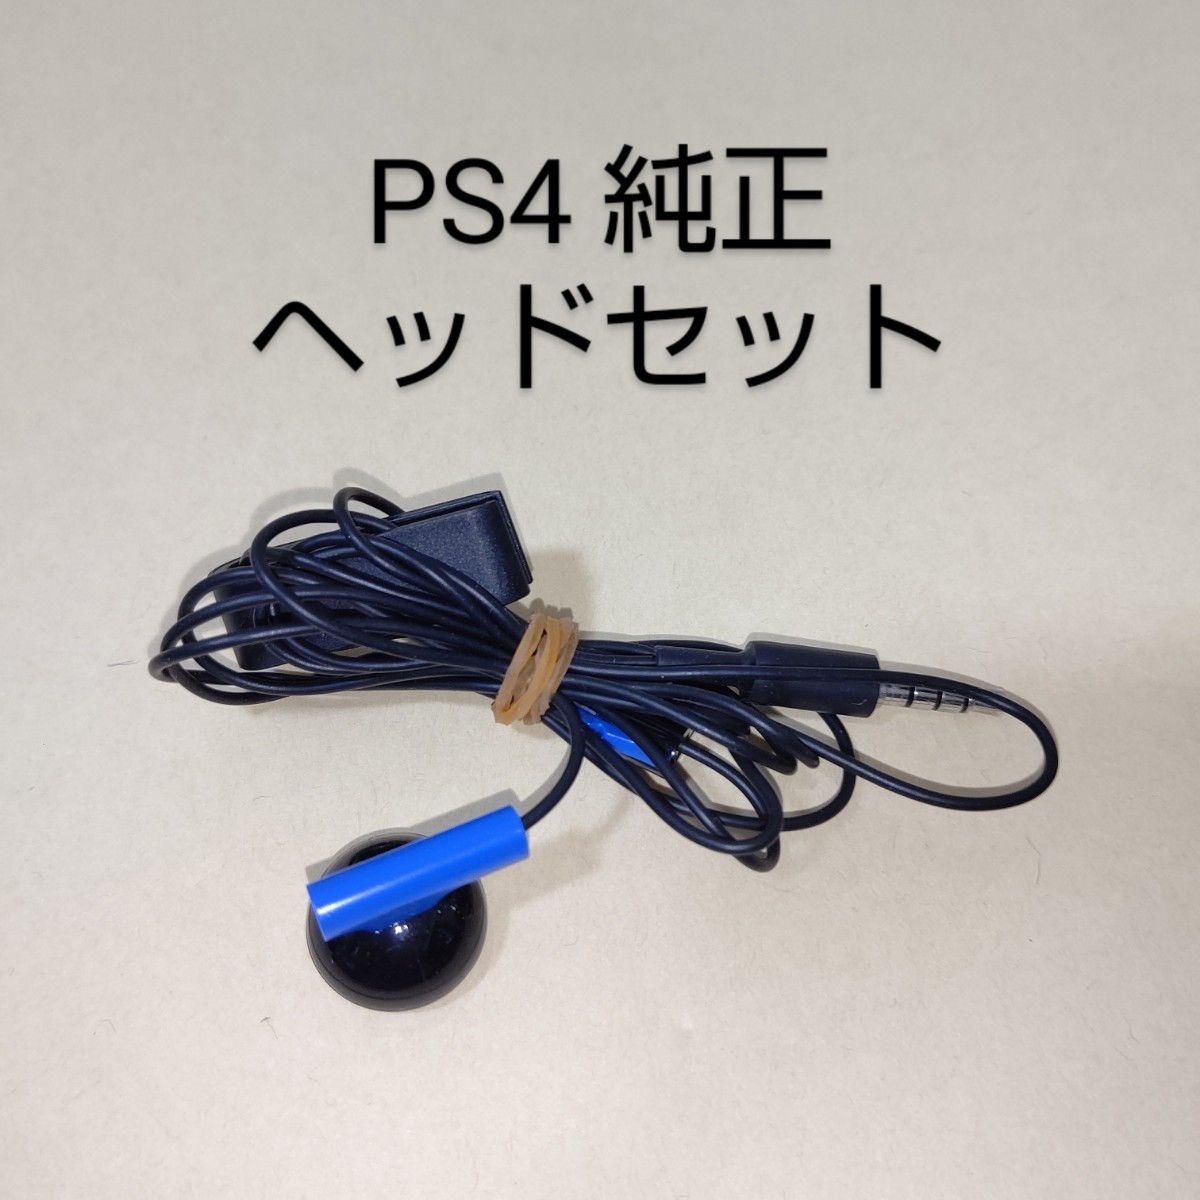 PS4 純正 モノラルヘッドセット PlayStation 4 イヤホンマイク